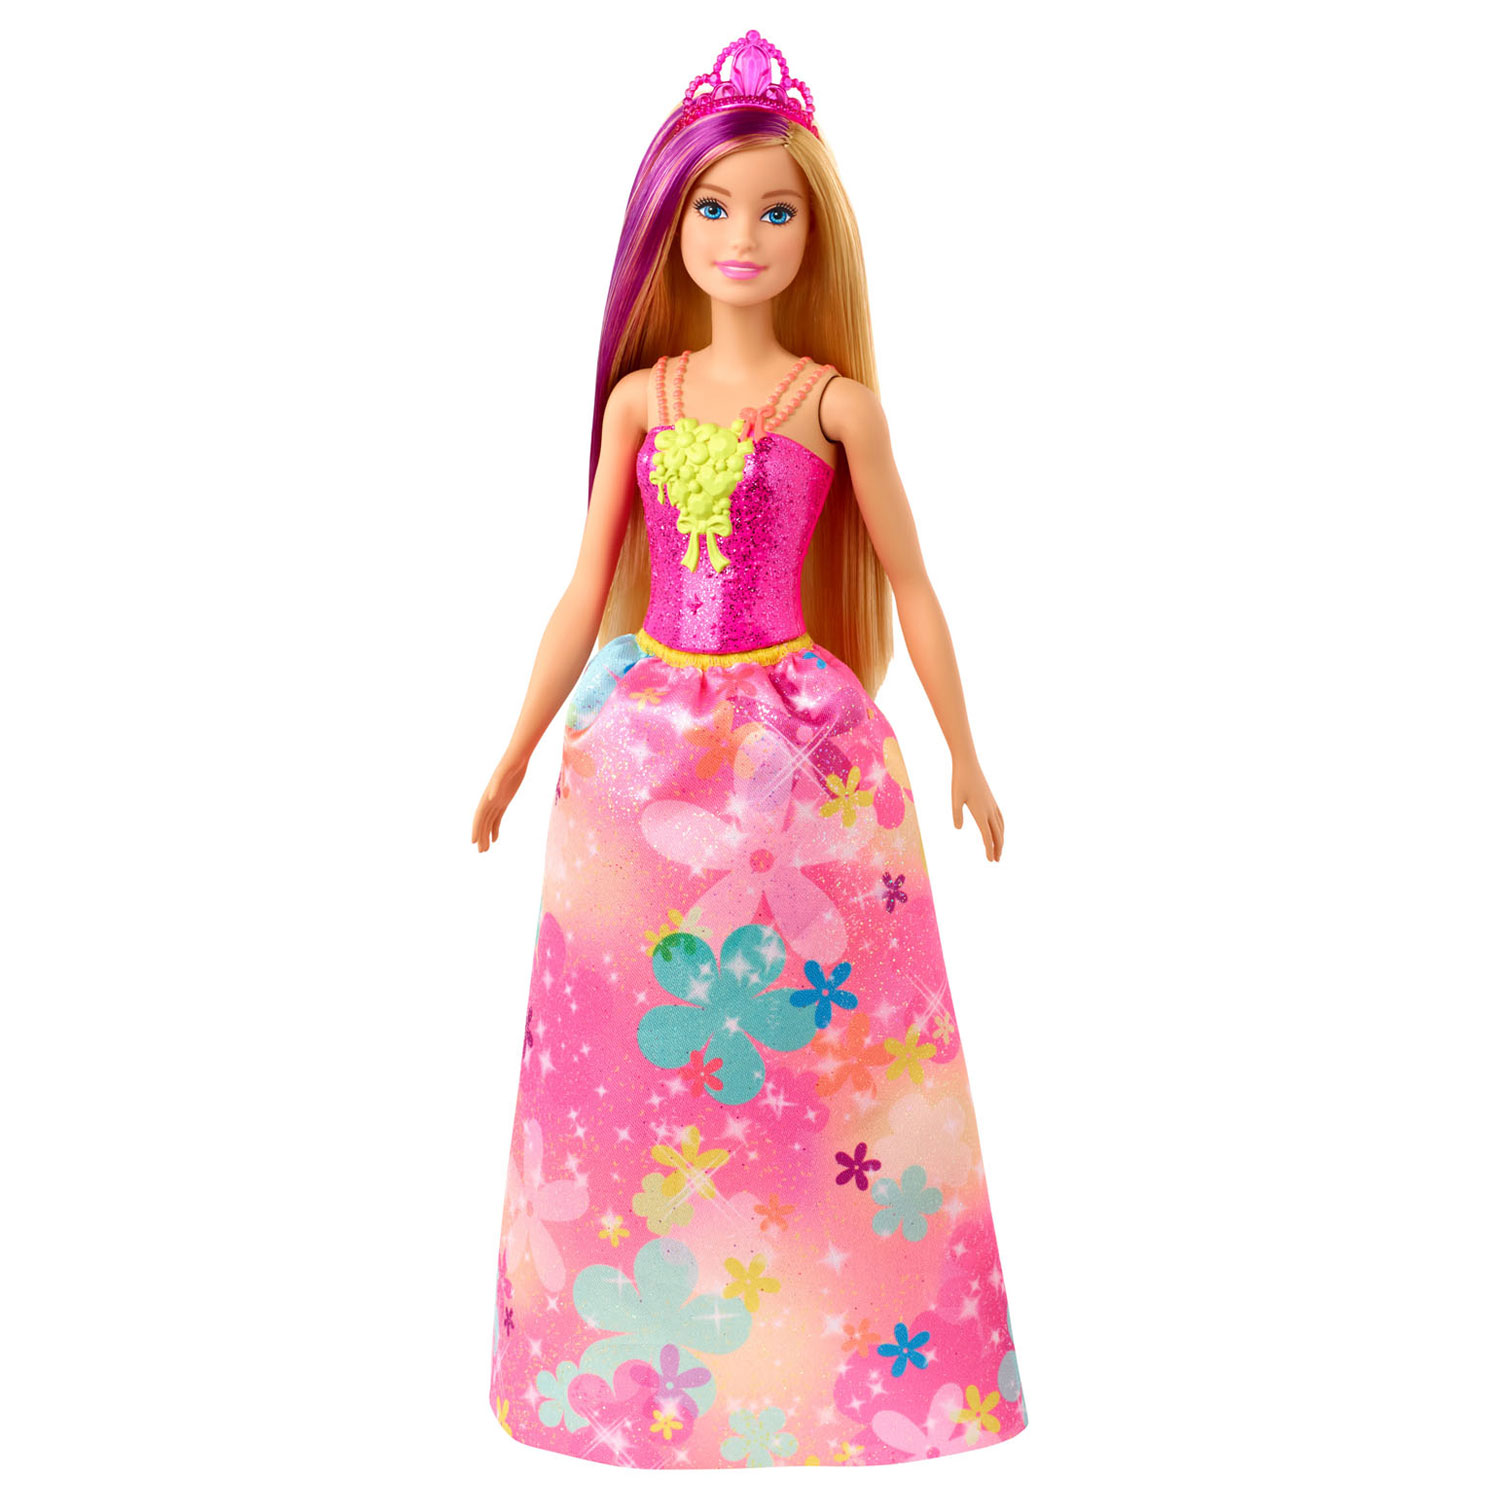 Barbie Dreamtopia Prinses met Blond Haar